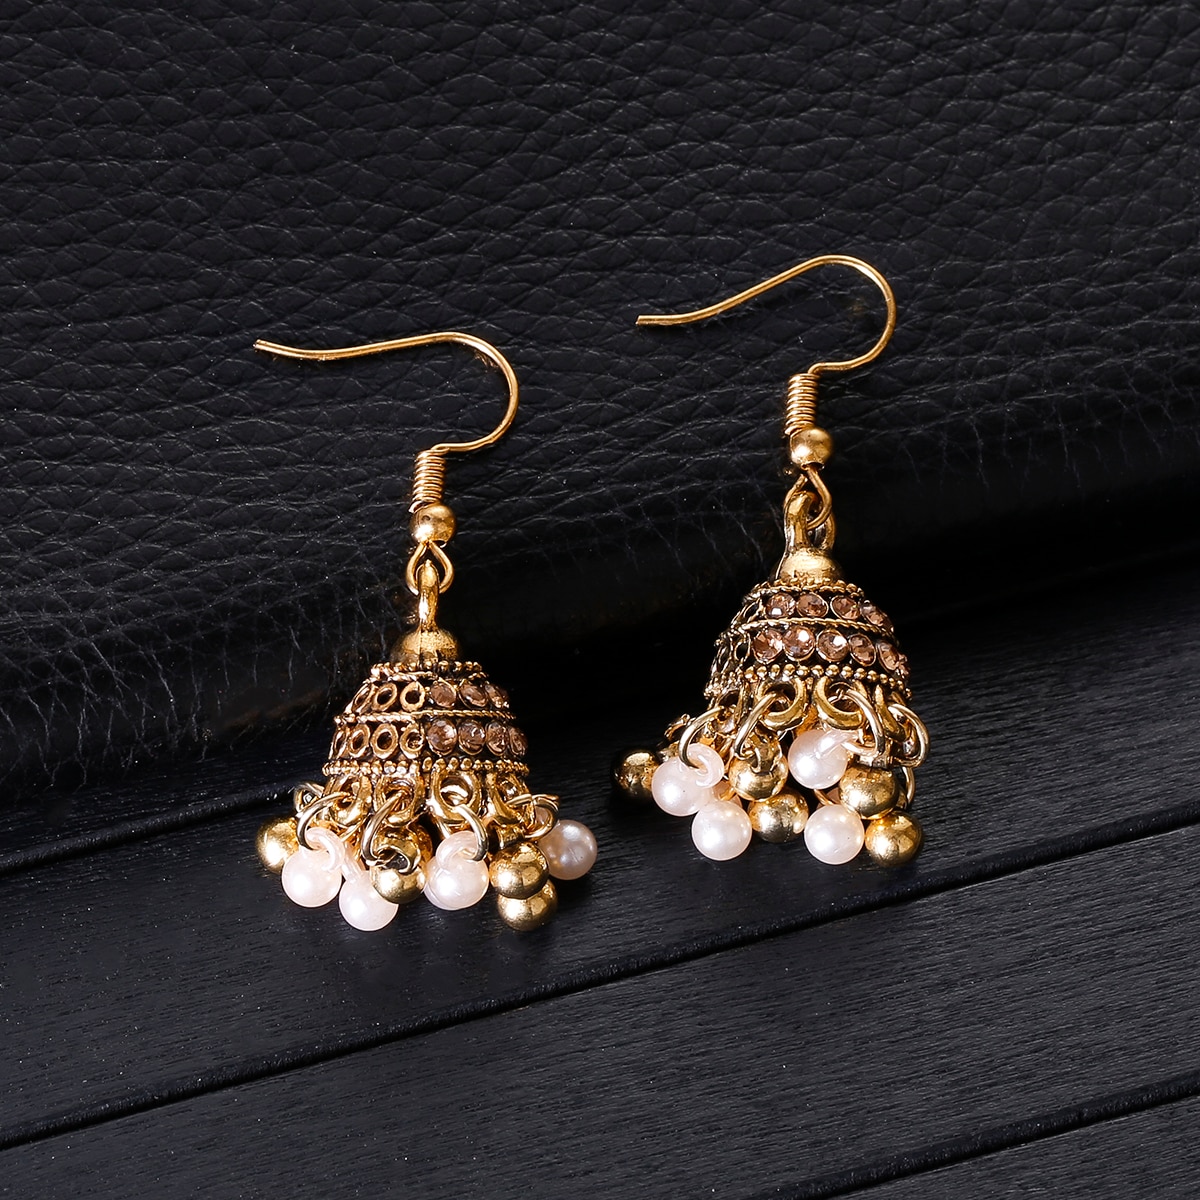 Retro-Classic-Small-Bell-CZ-Earrings-Women39s-Ethnic-Pearl-Tassel-Earrings-Piercing-Wedding-Jewelry--3256804108684137-2